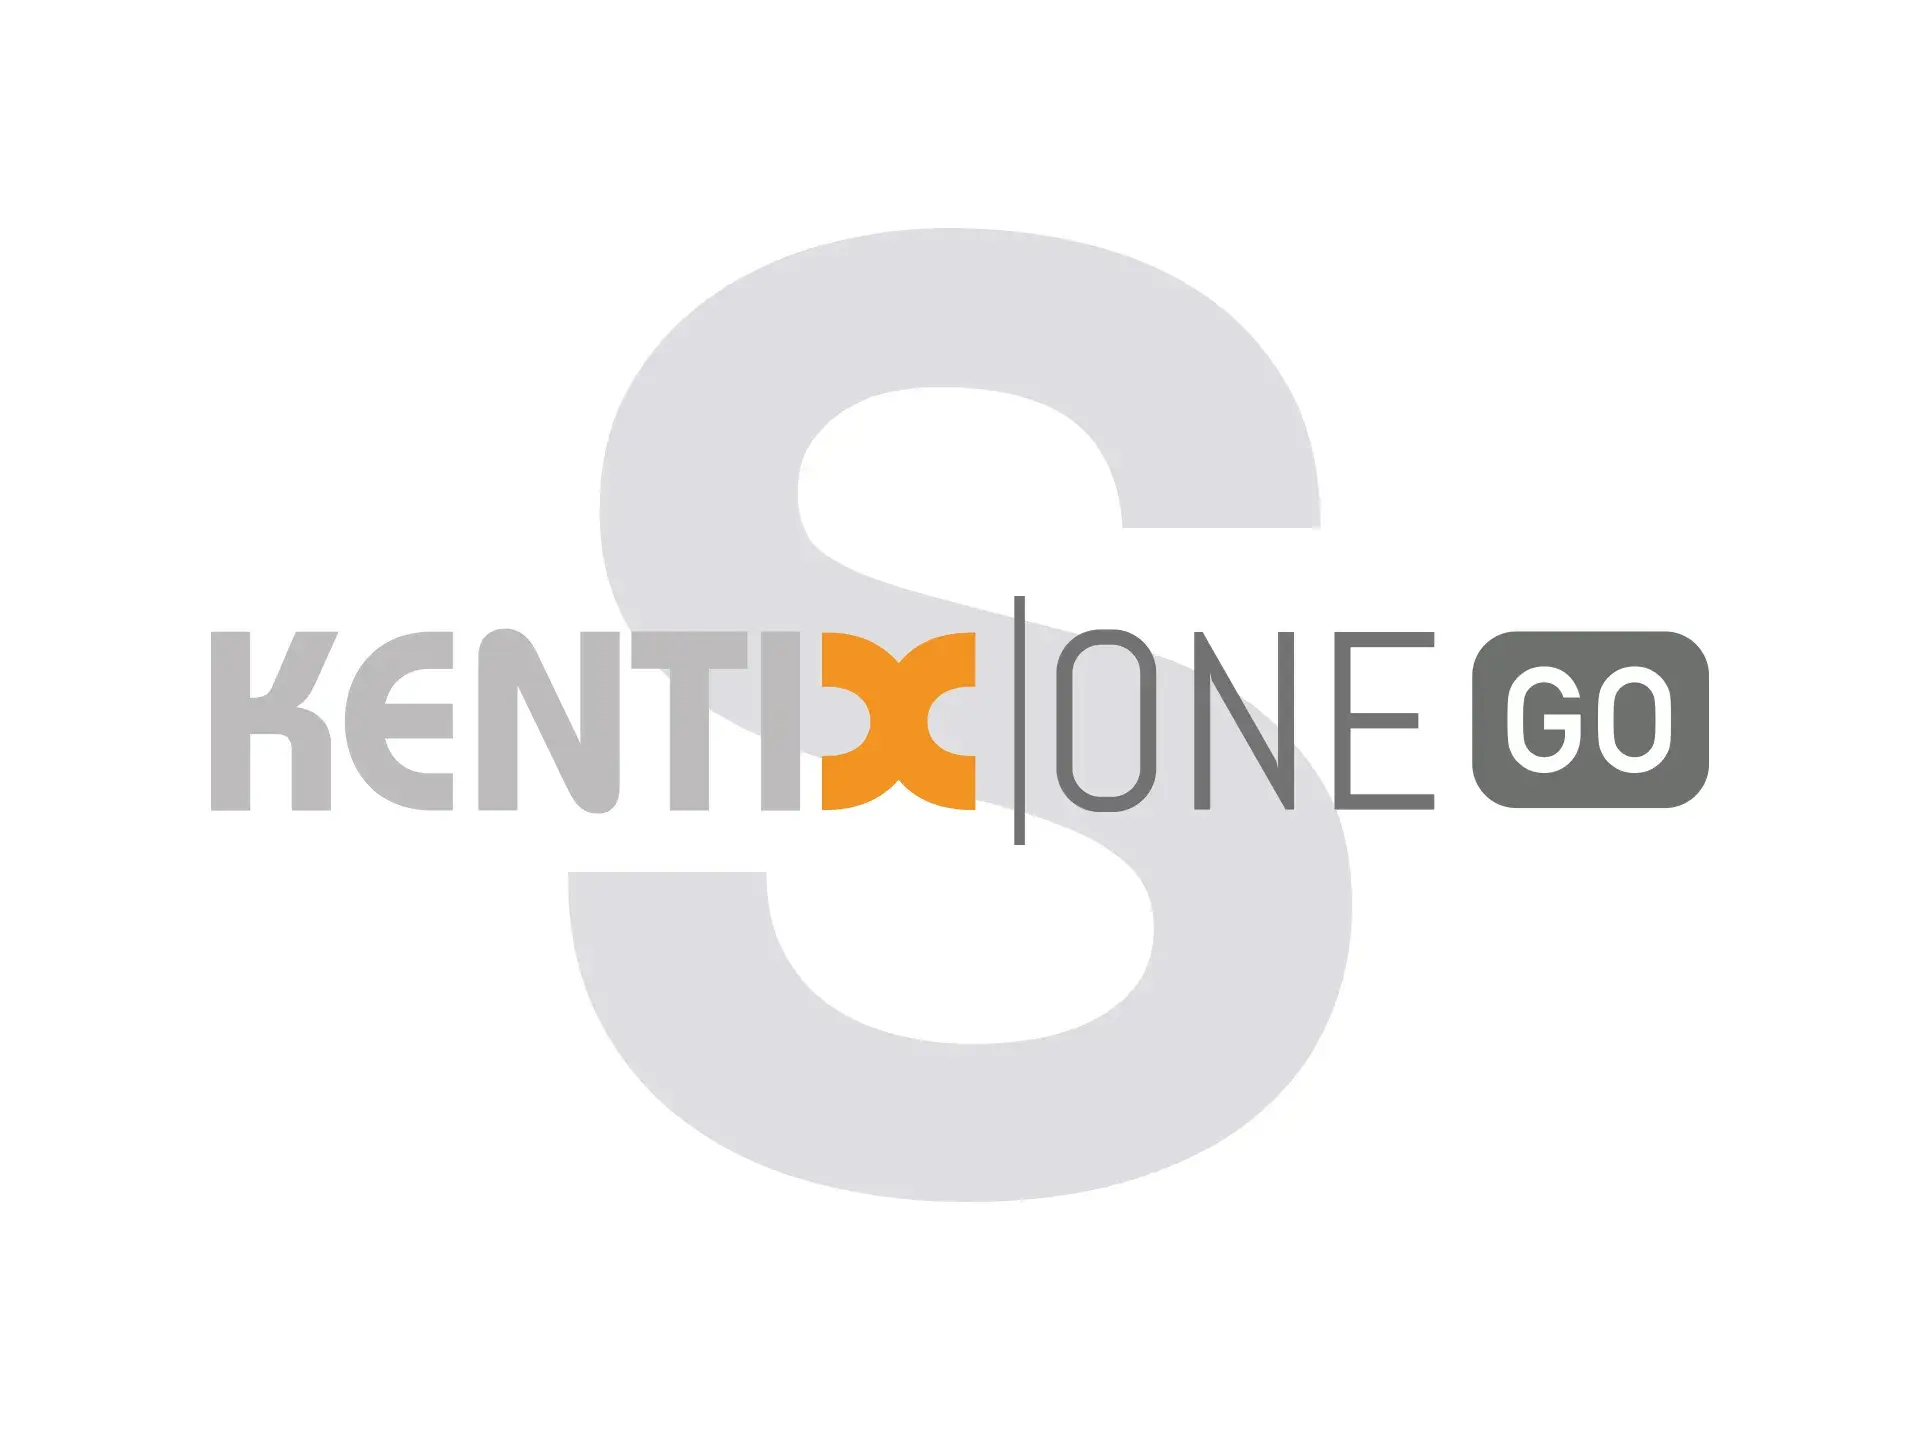 KentixONE-GO für 25 Geräte (50 virtuelle Geräte), 12 Monate Laufzeit